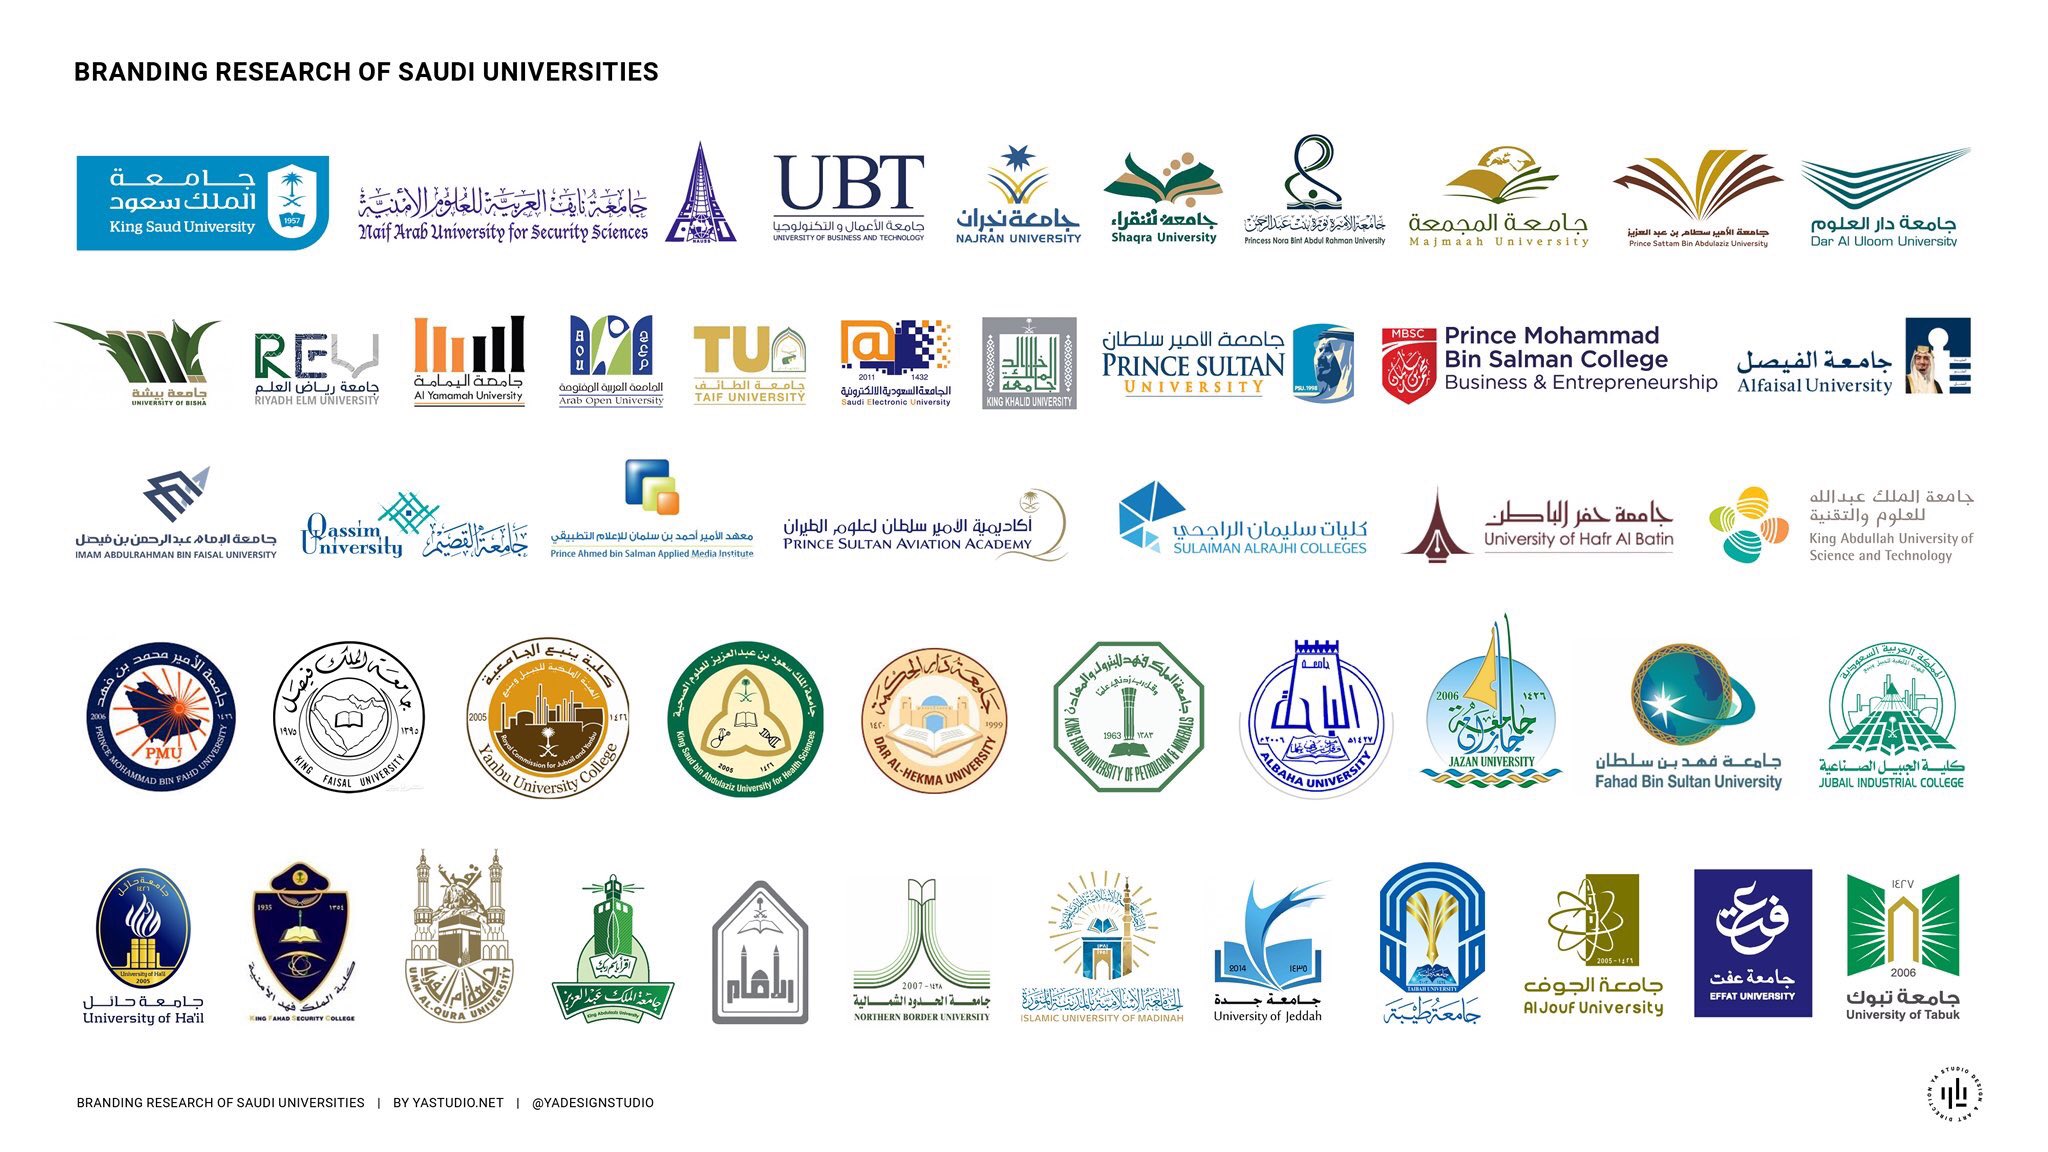 وافي بن عبدالله on X: "شعارات الجامعات السعودية .. أي شعار هو الأفضل برأيك؟  ولماذا؟ https://t.co/j67c4IRXts" / X